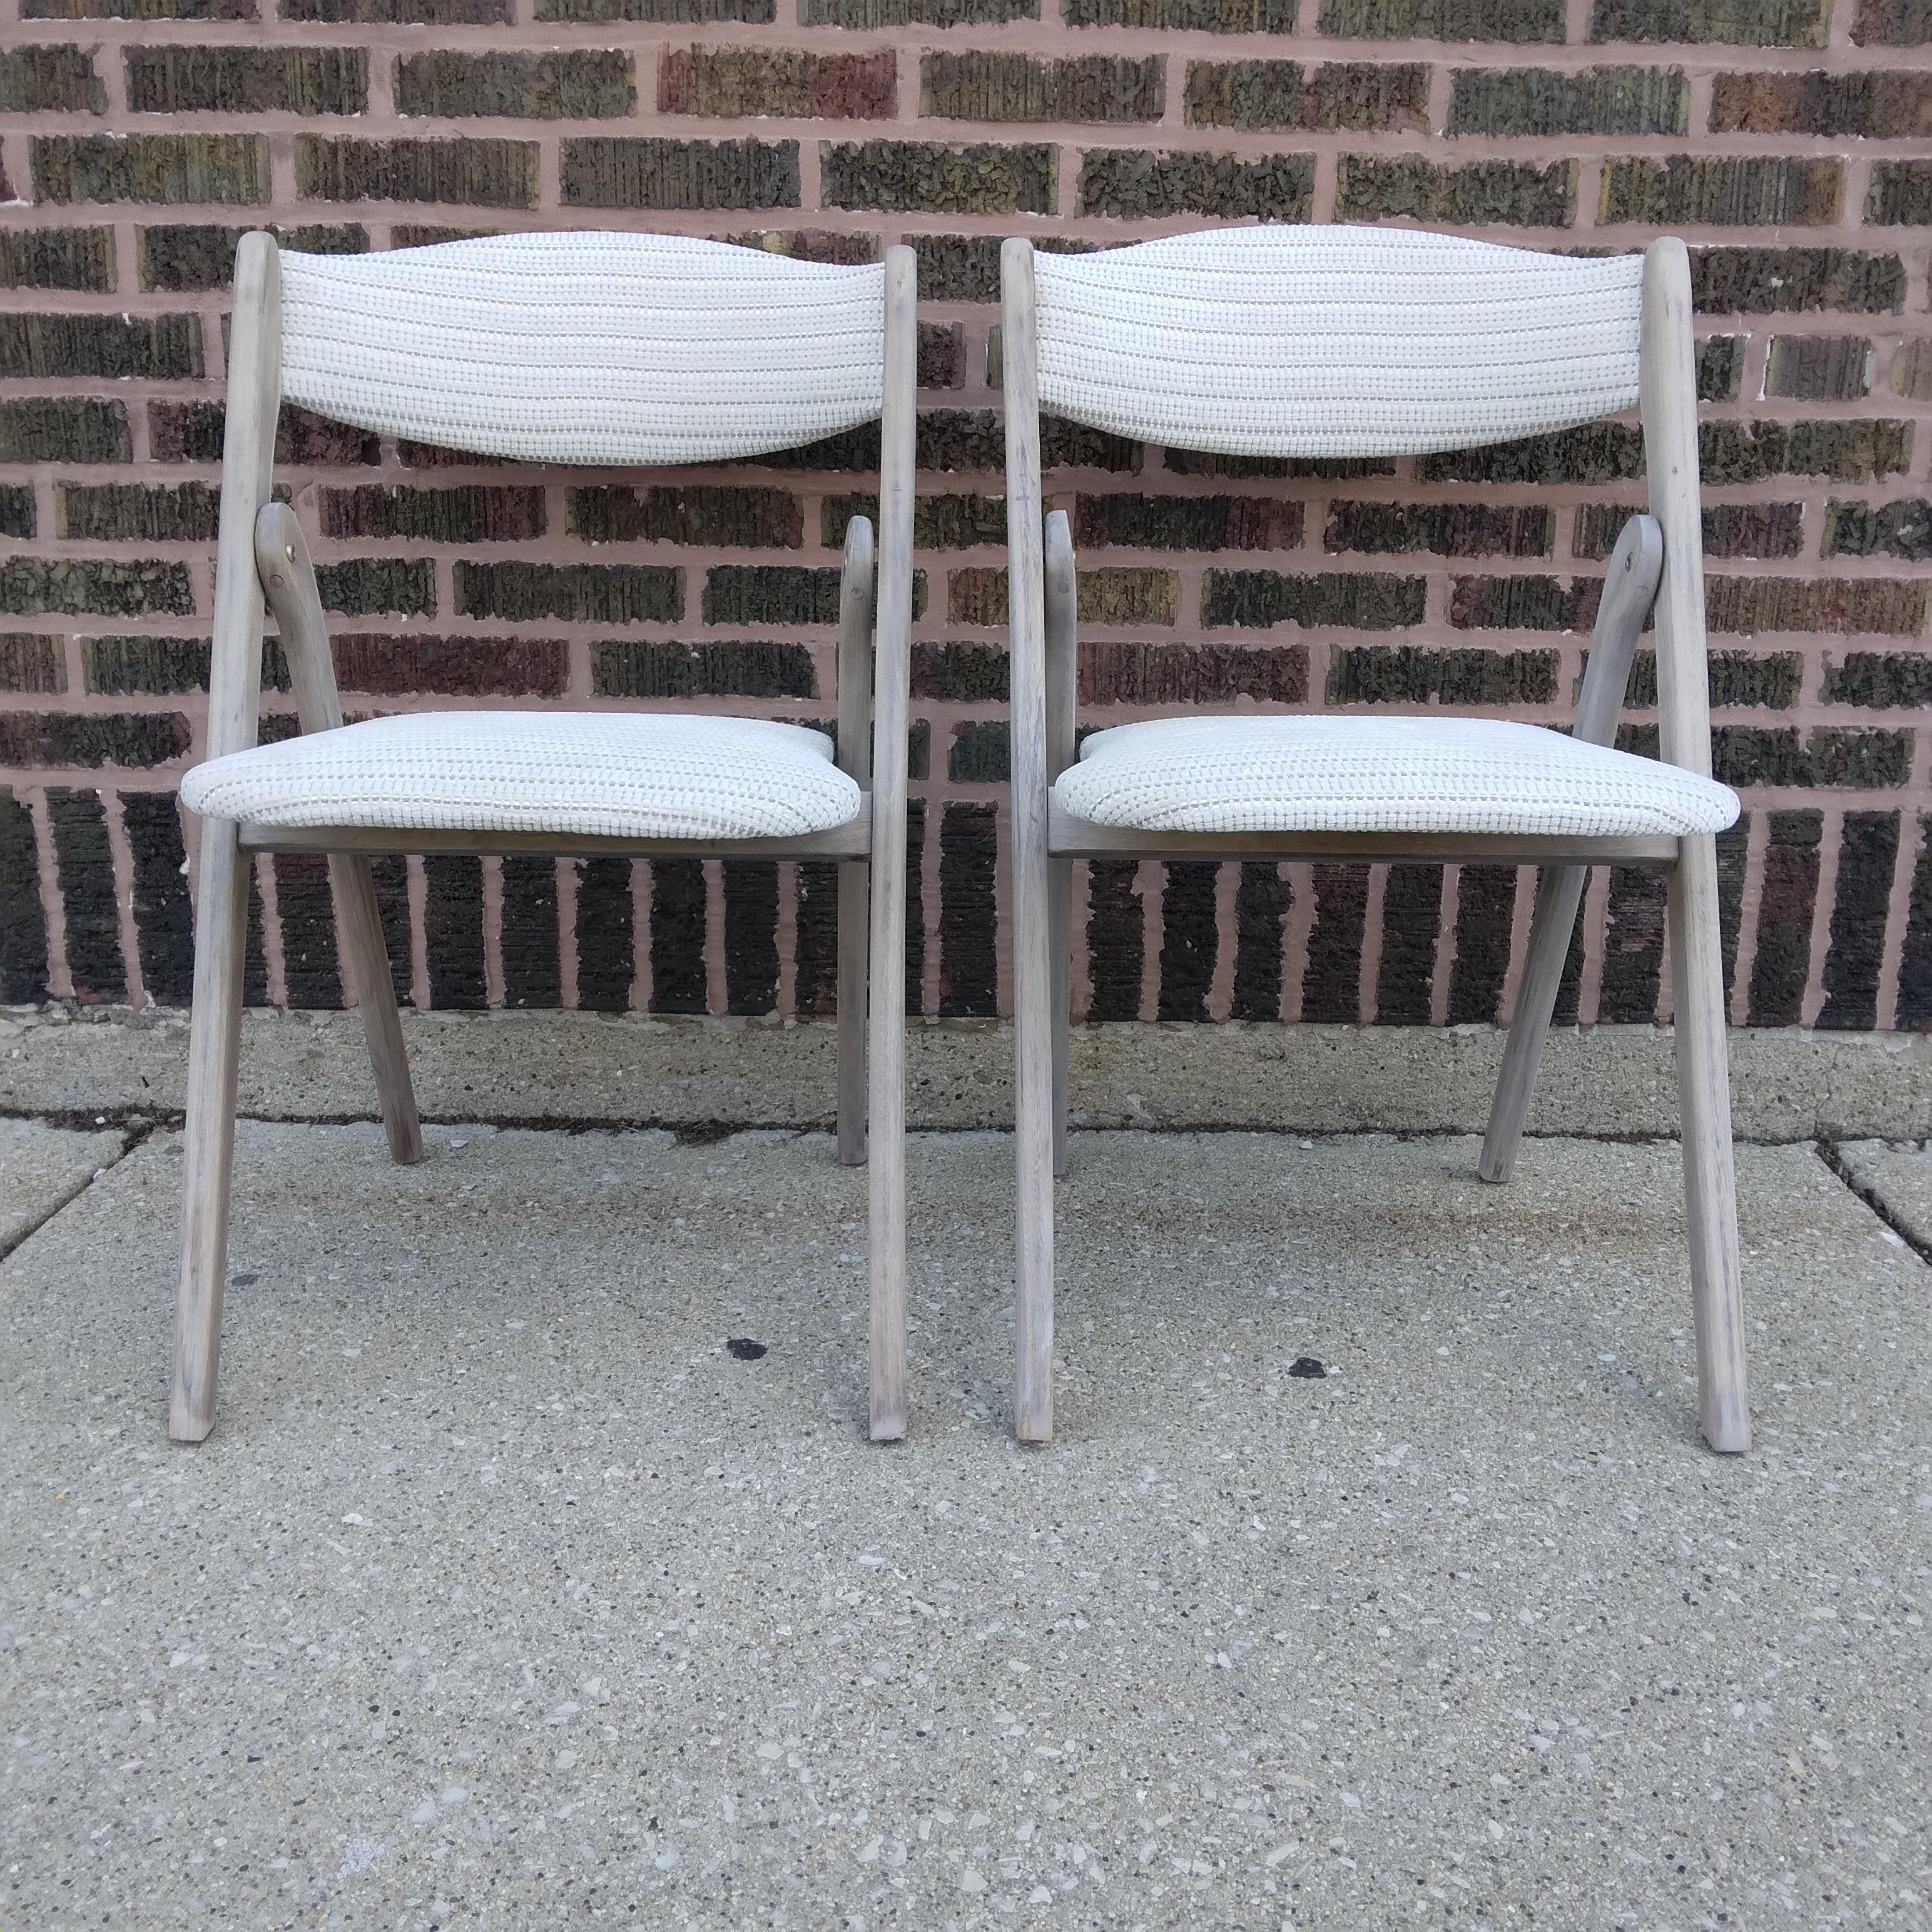 Diese frisch aufgearbeiteten Vintage-Stühle sind einfach umwerfend. Sie sind lichtdurchflutet. Ursprünglich als Coronet Wonderfold Stühle bekannt, sind diese schönen Exemplare mittlerweile sechzig Jahre alt und so robust wie eh und je. Wir lieben